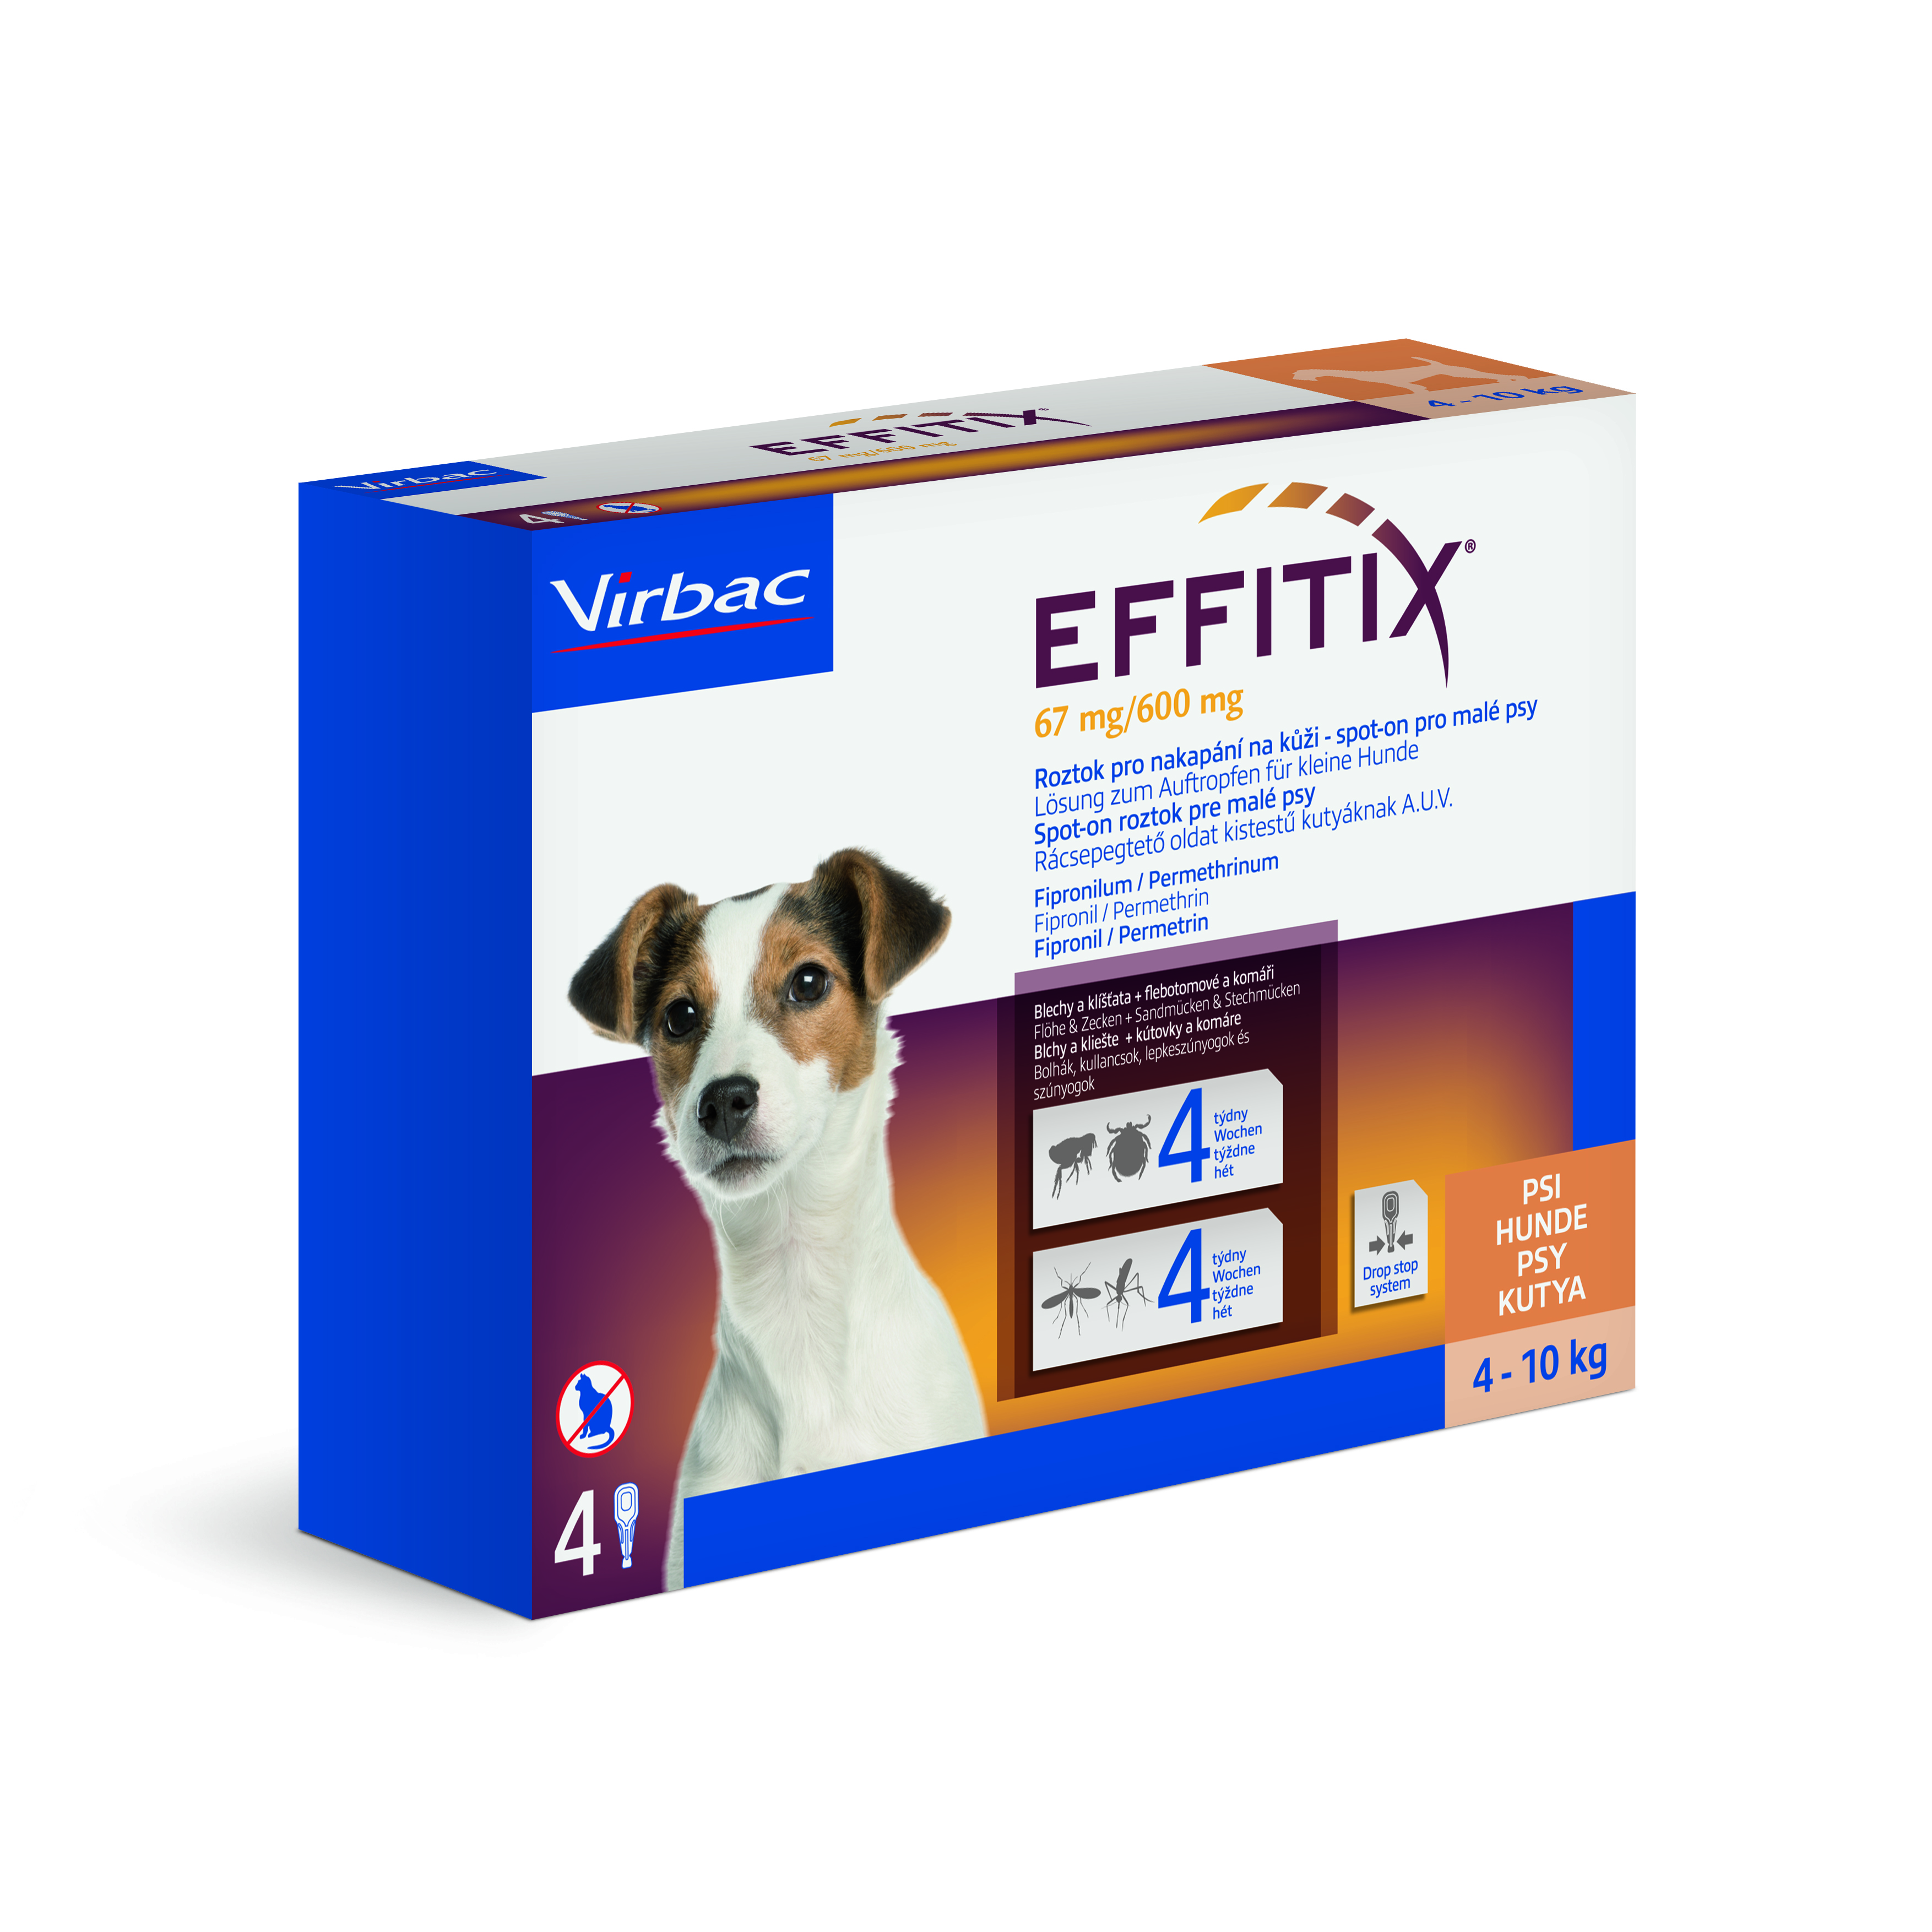 Effitix 67 mg/600 mg, roztok pro nakapání na kůži - spot-on pro malé psy 4 x 1,1 ml